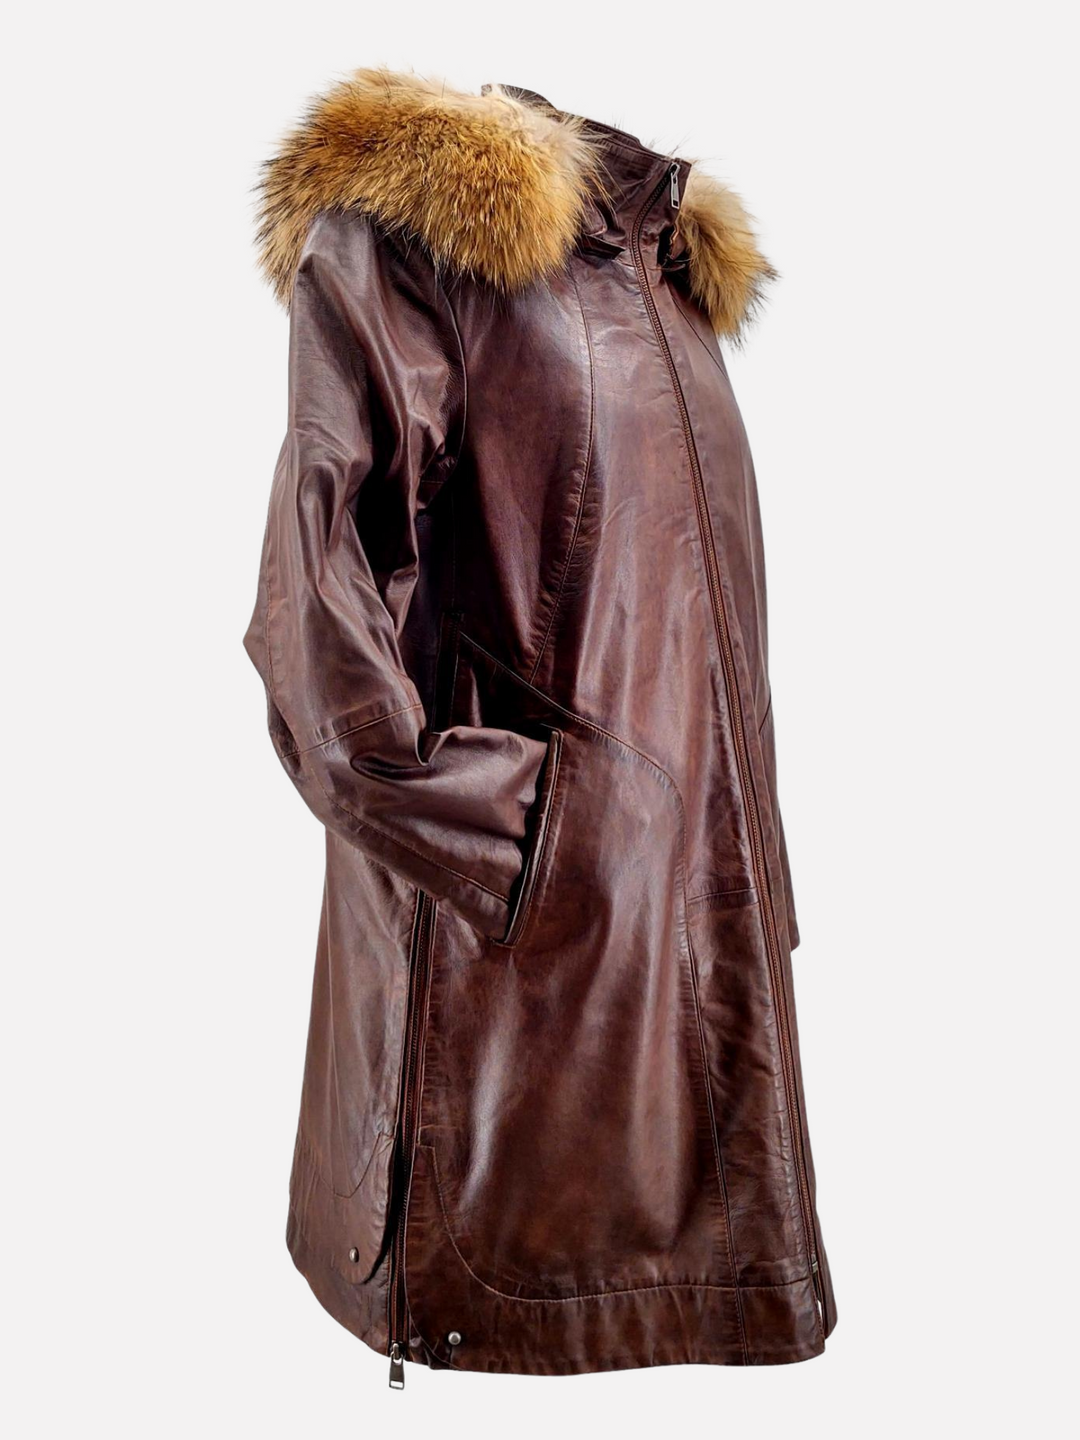 Pia kobber brun læder jakke /frakke med hætte - dame